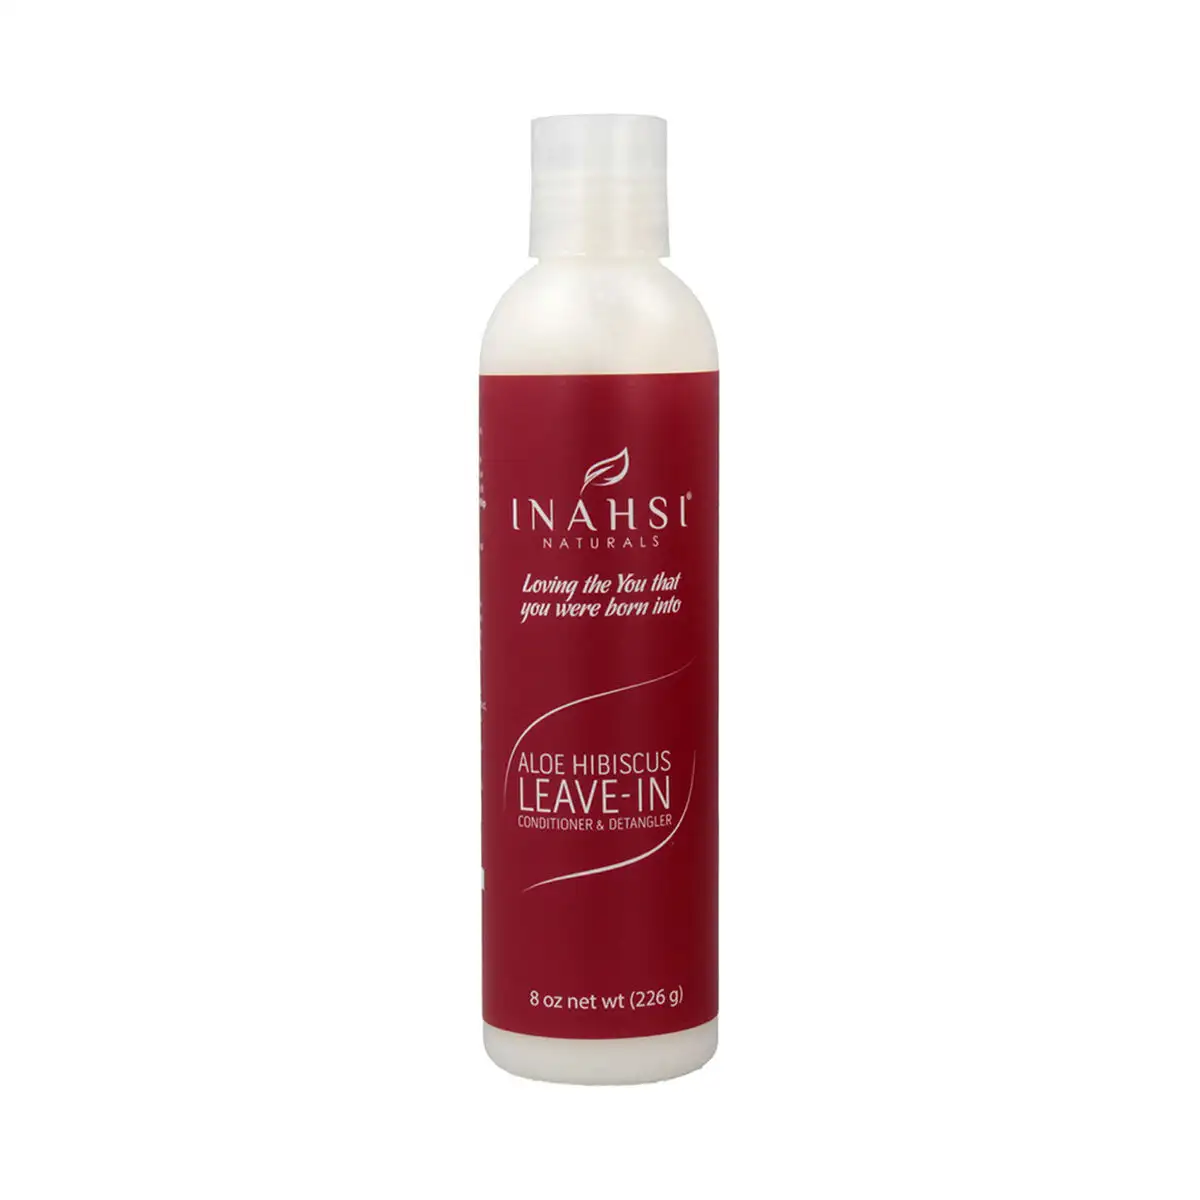 Apres shampooing inahsi hibiscus leave in detangler 226 g _2242. DIAYTAR SENEGAL - Où Choisir Devient une Expérience Personnalisée. Explorez notre boutique en ligne pour découvrir des produits qui s'adaptent à votre style et à votre essence.